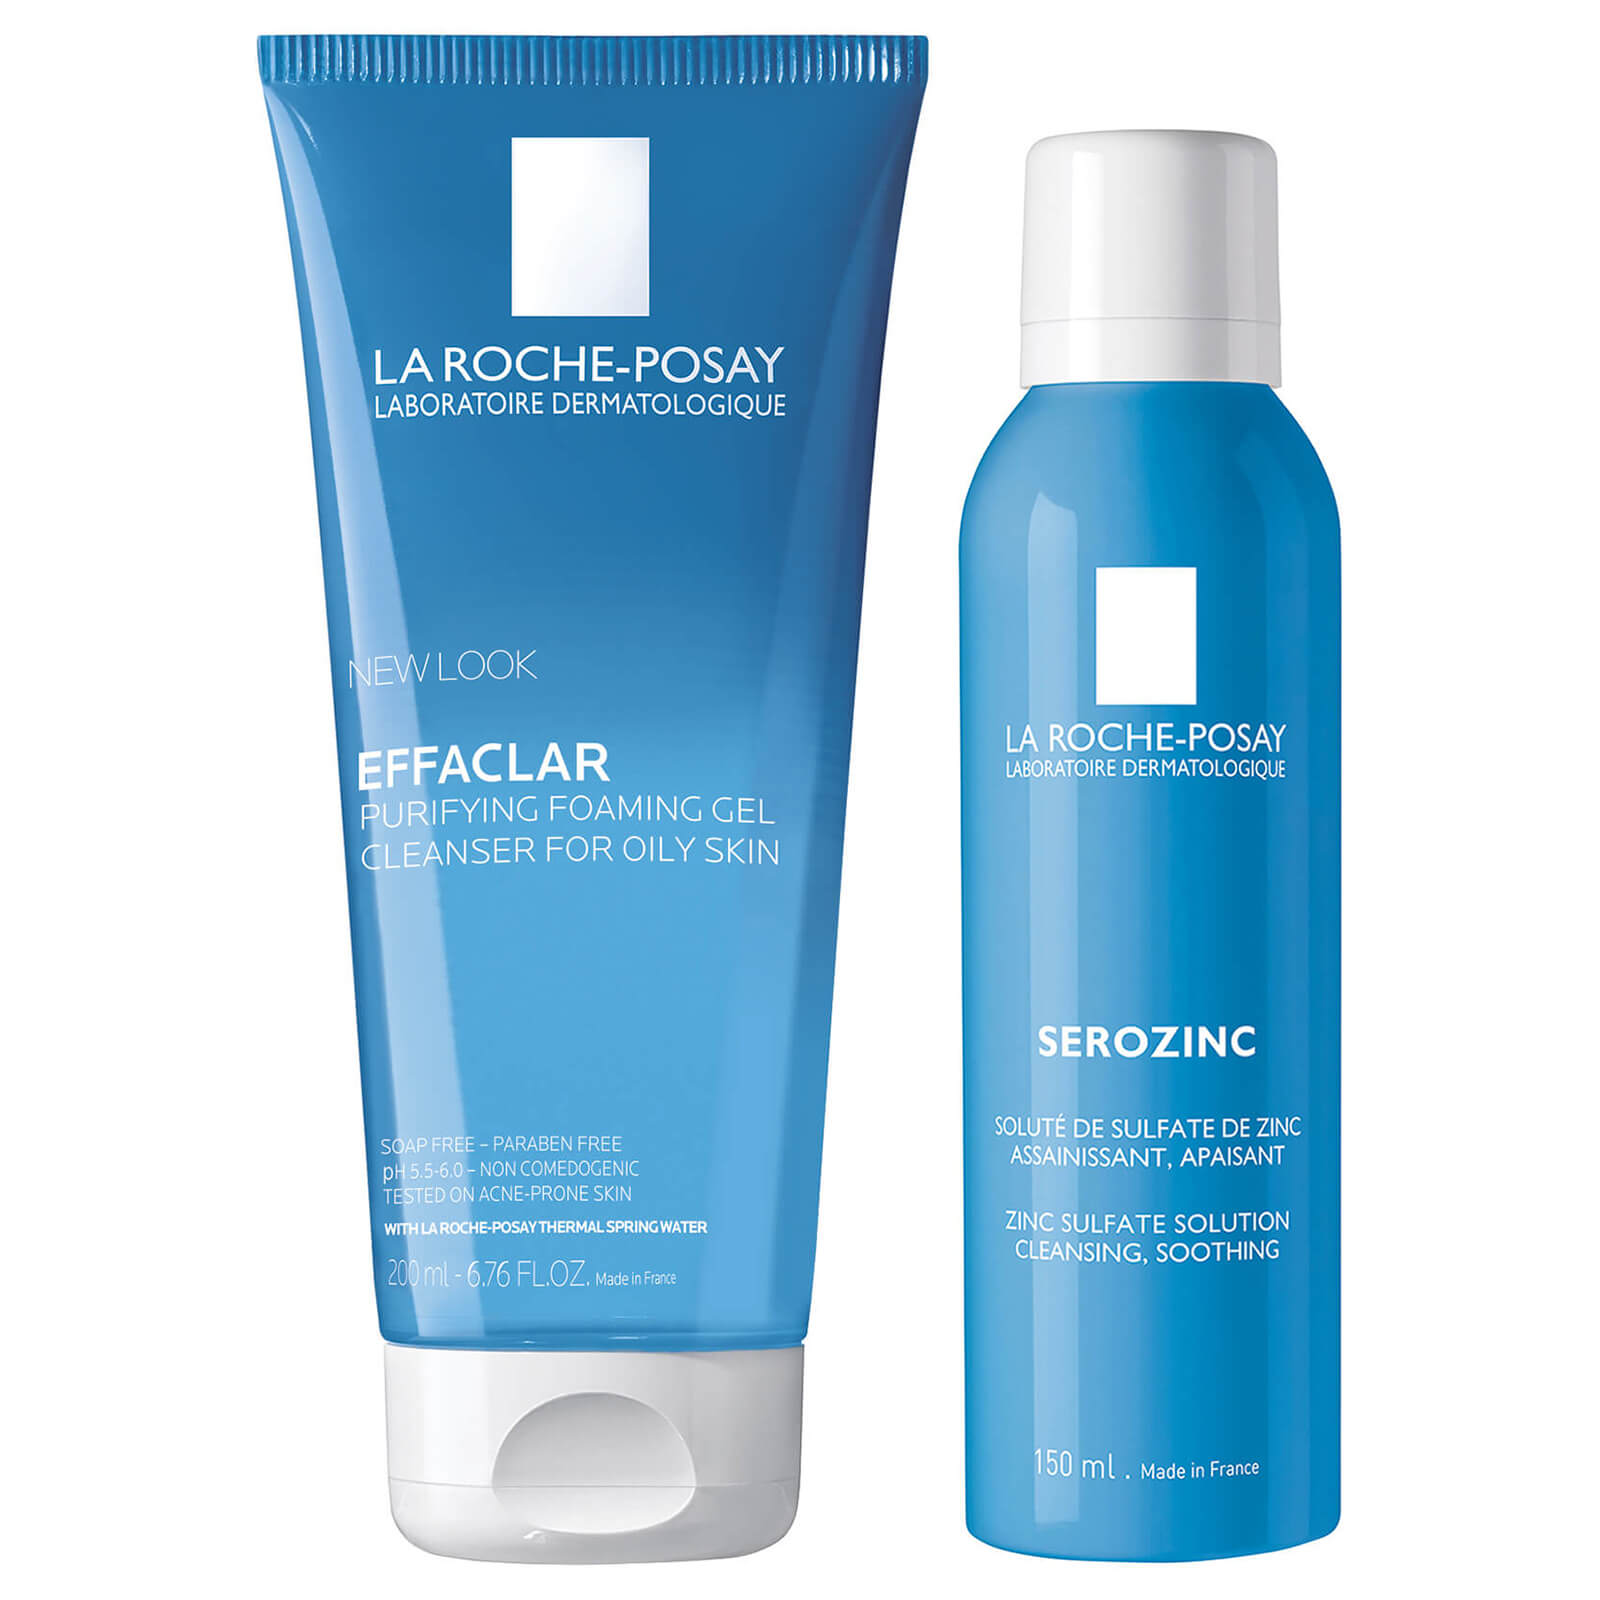 La Roche-Posay Men's Skincare Cleanse and Post Shave Care Duo von La Roche-Posay